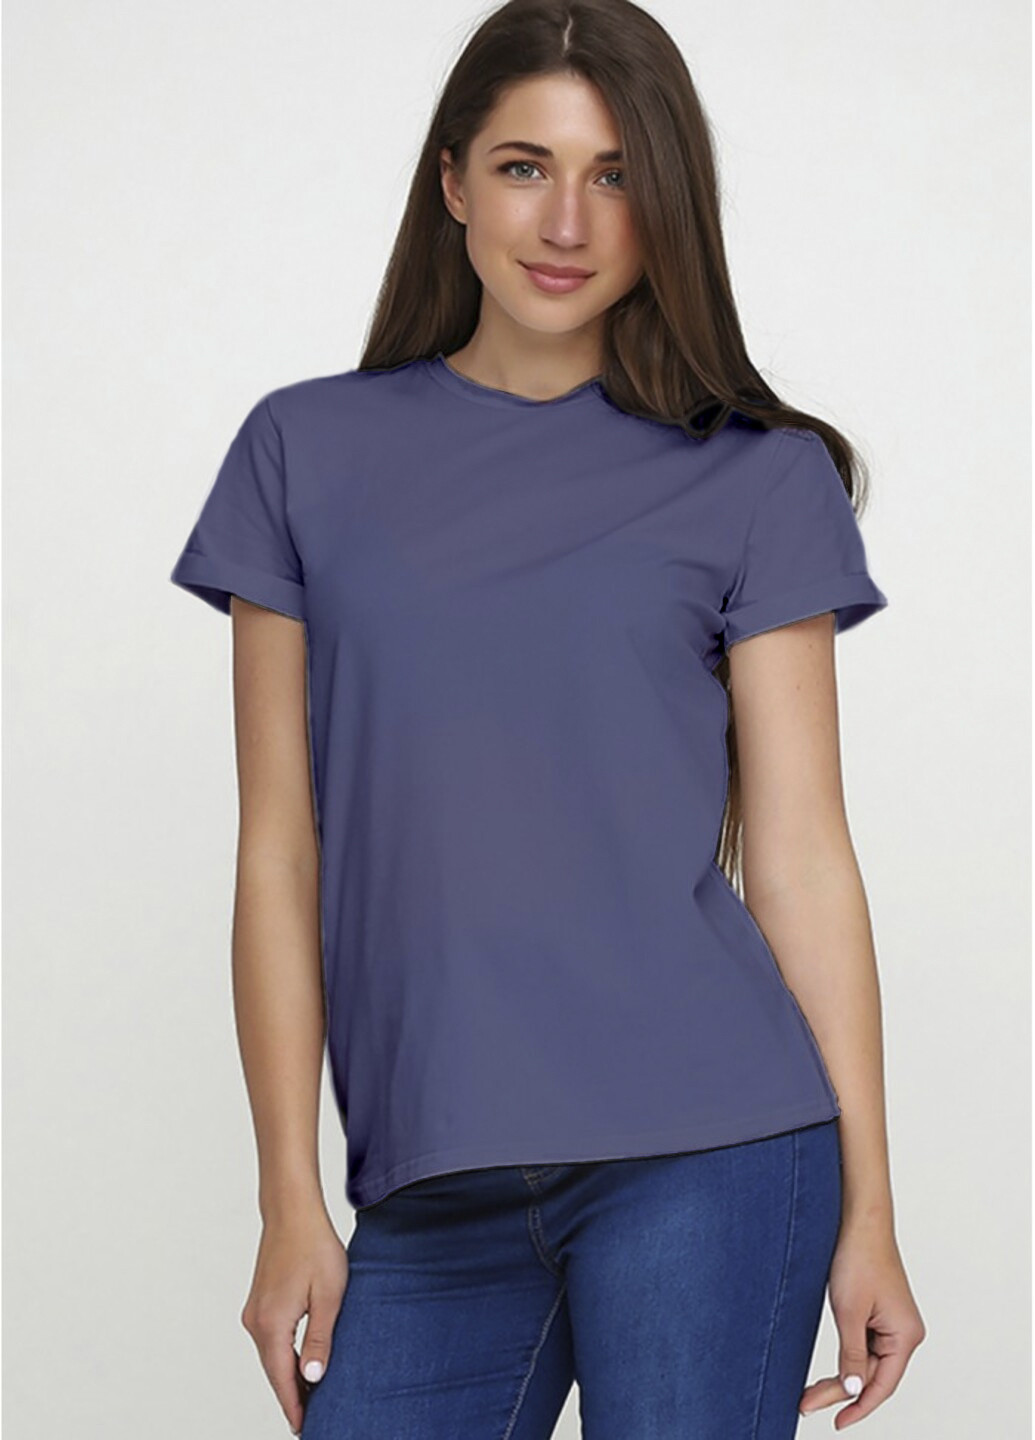 Світло-фіолетова всесезон футболка жіноча ж563-24 сіро-фіолетова з коротким рукавом Malta Ж563-24 сірий св./фіолет